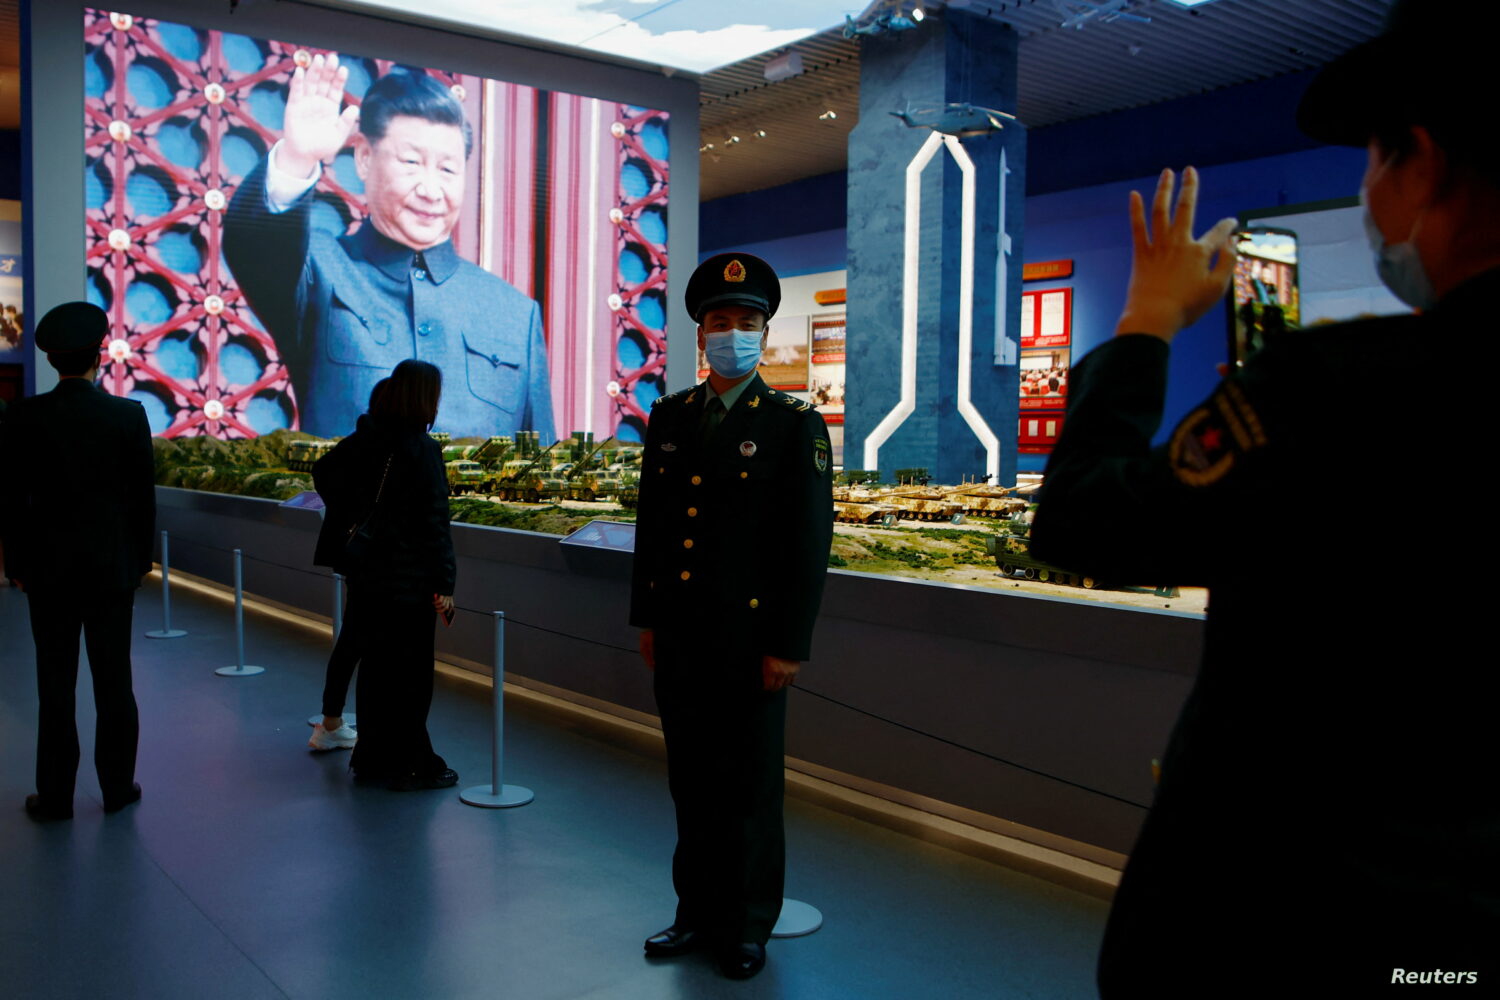 سعيا وراء الولاء المطلق الرئيس الصيني يطلق حملة في صفوف الجيش - إنترنت